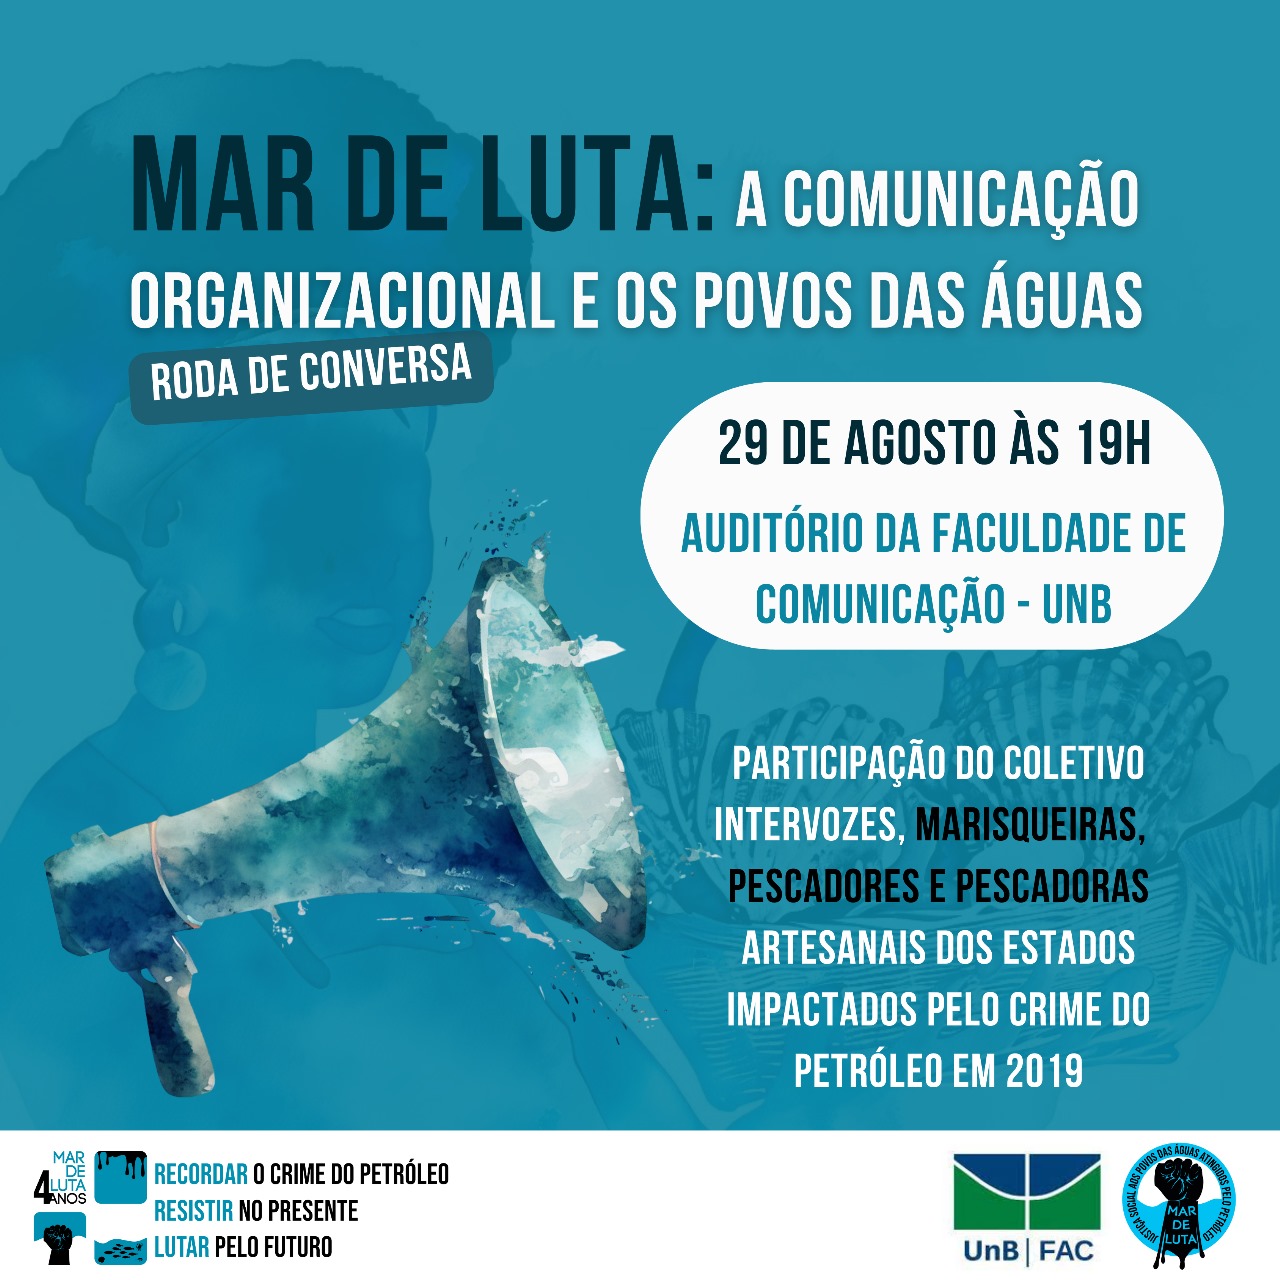 MAR DE LUTA : A Comunicação Organizacional e os povos das águas